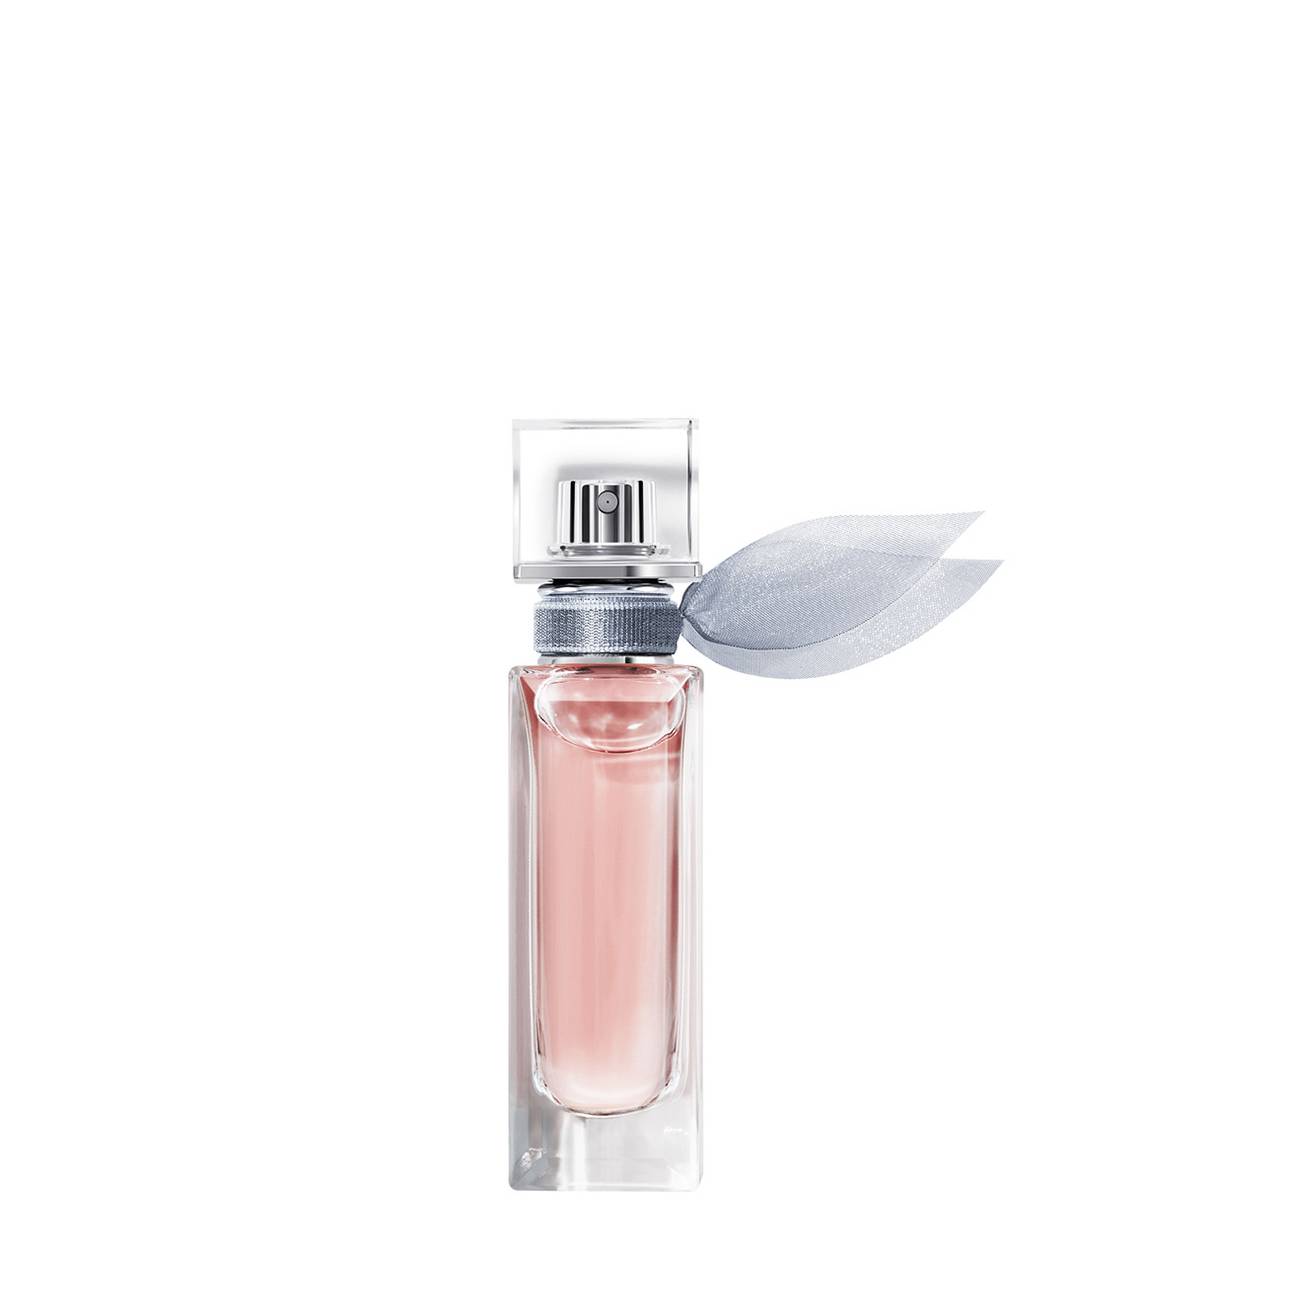 Apa de Parfum Lancôme LA VIE EST BELLE EAU DE PARFUM DROPS 15ml cu comanda online